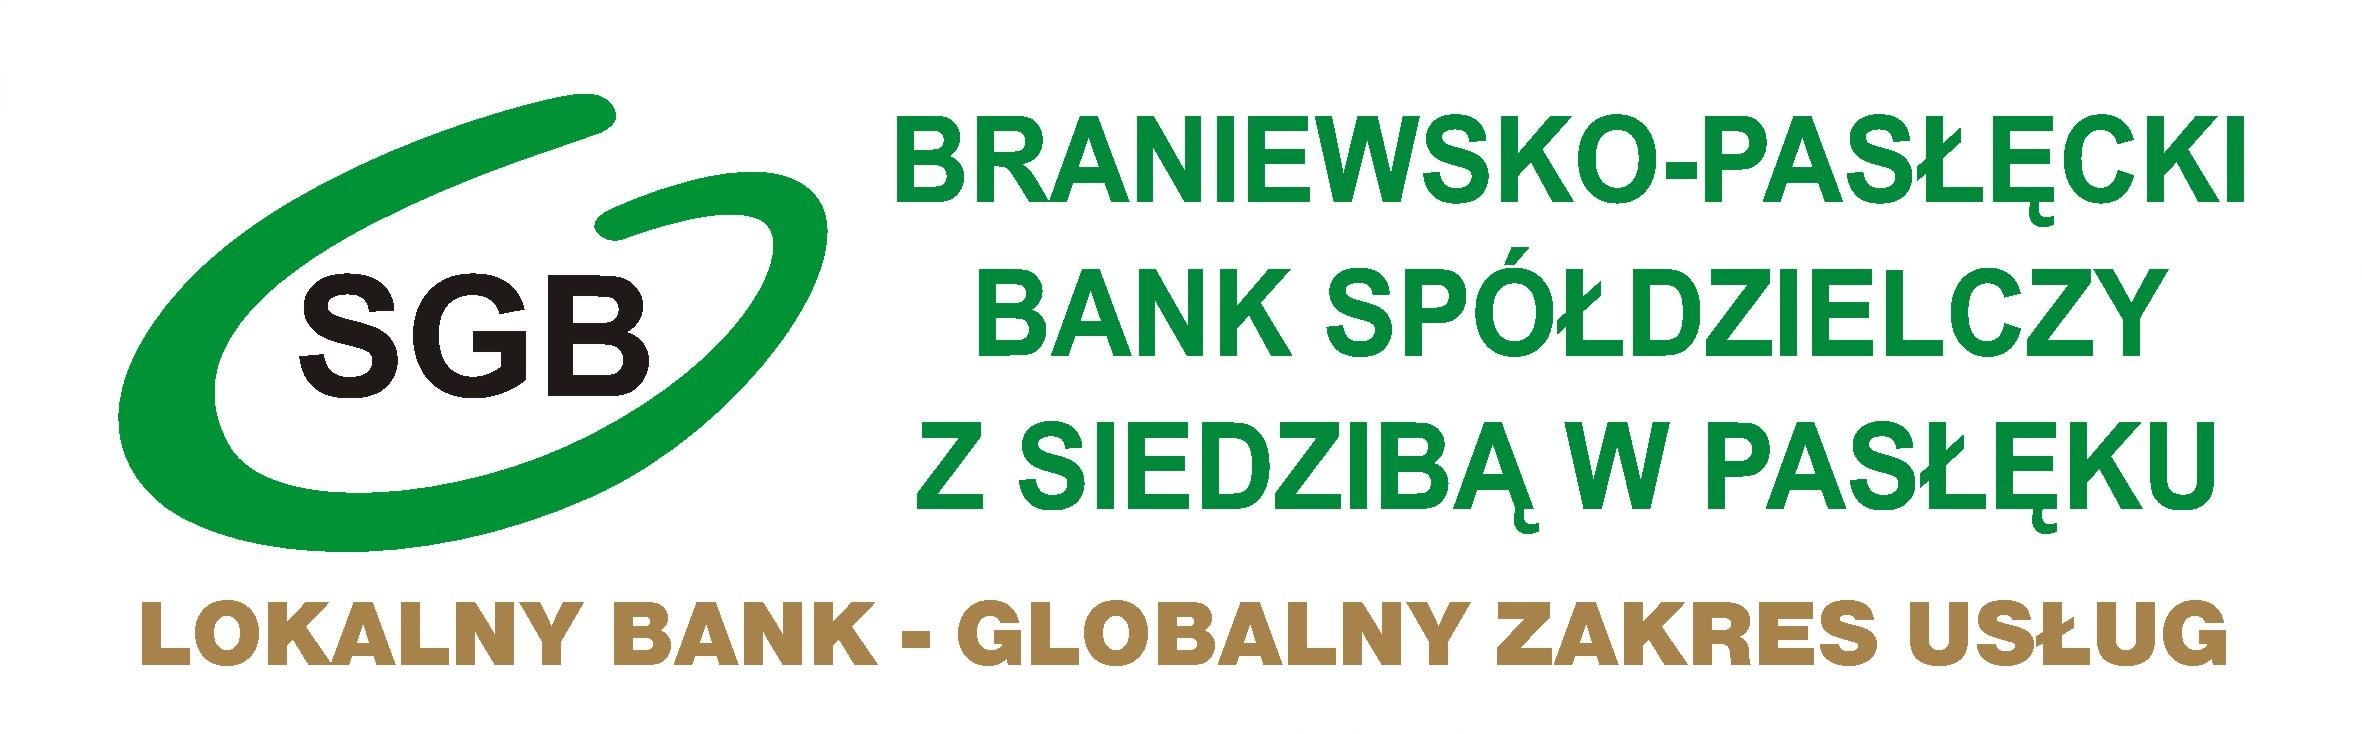 RODO - Braniewsko-Pasłęcki Bank Spółdzielczy z siedzibą w Pasłęku